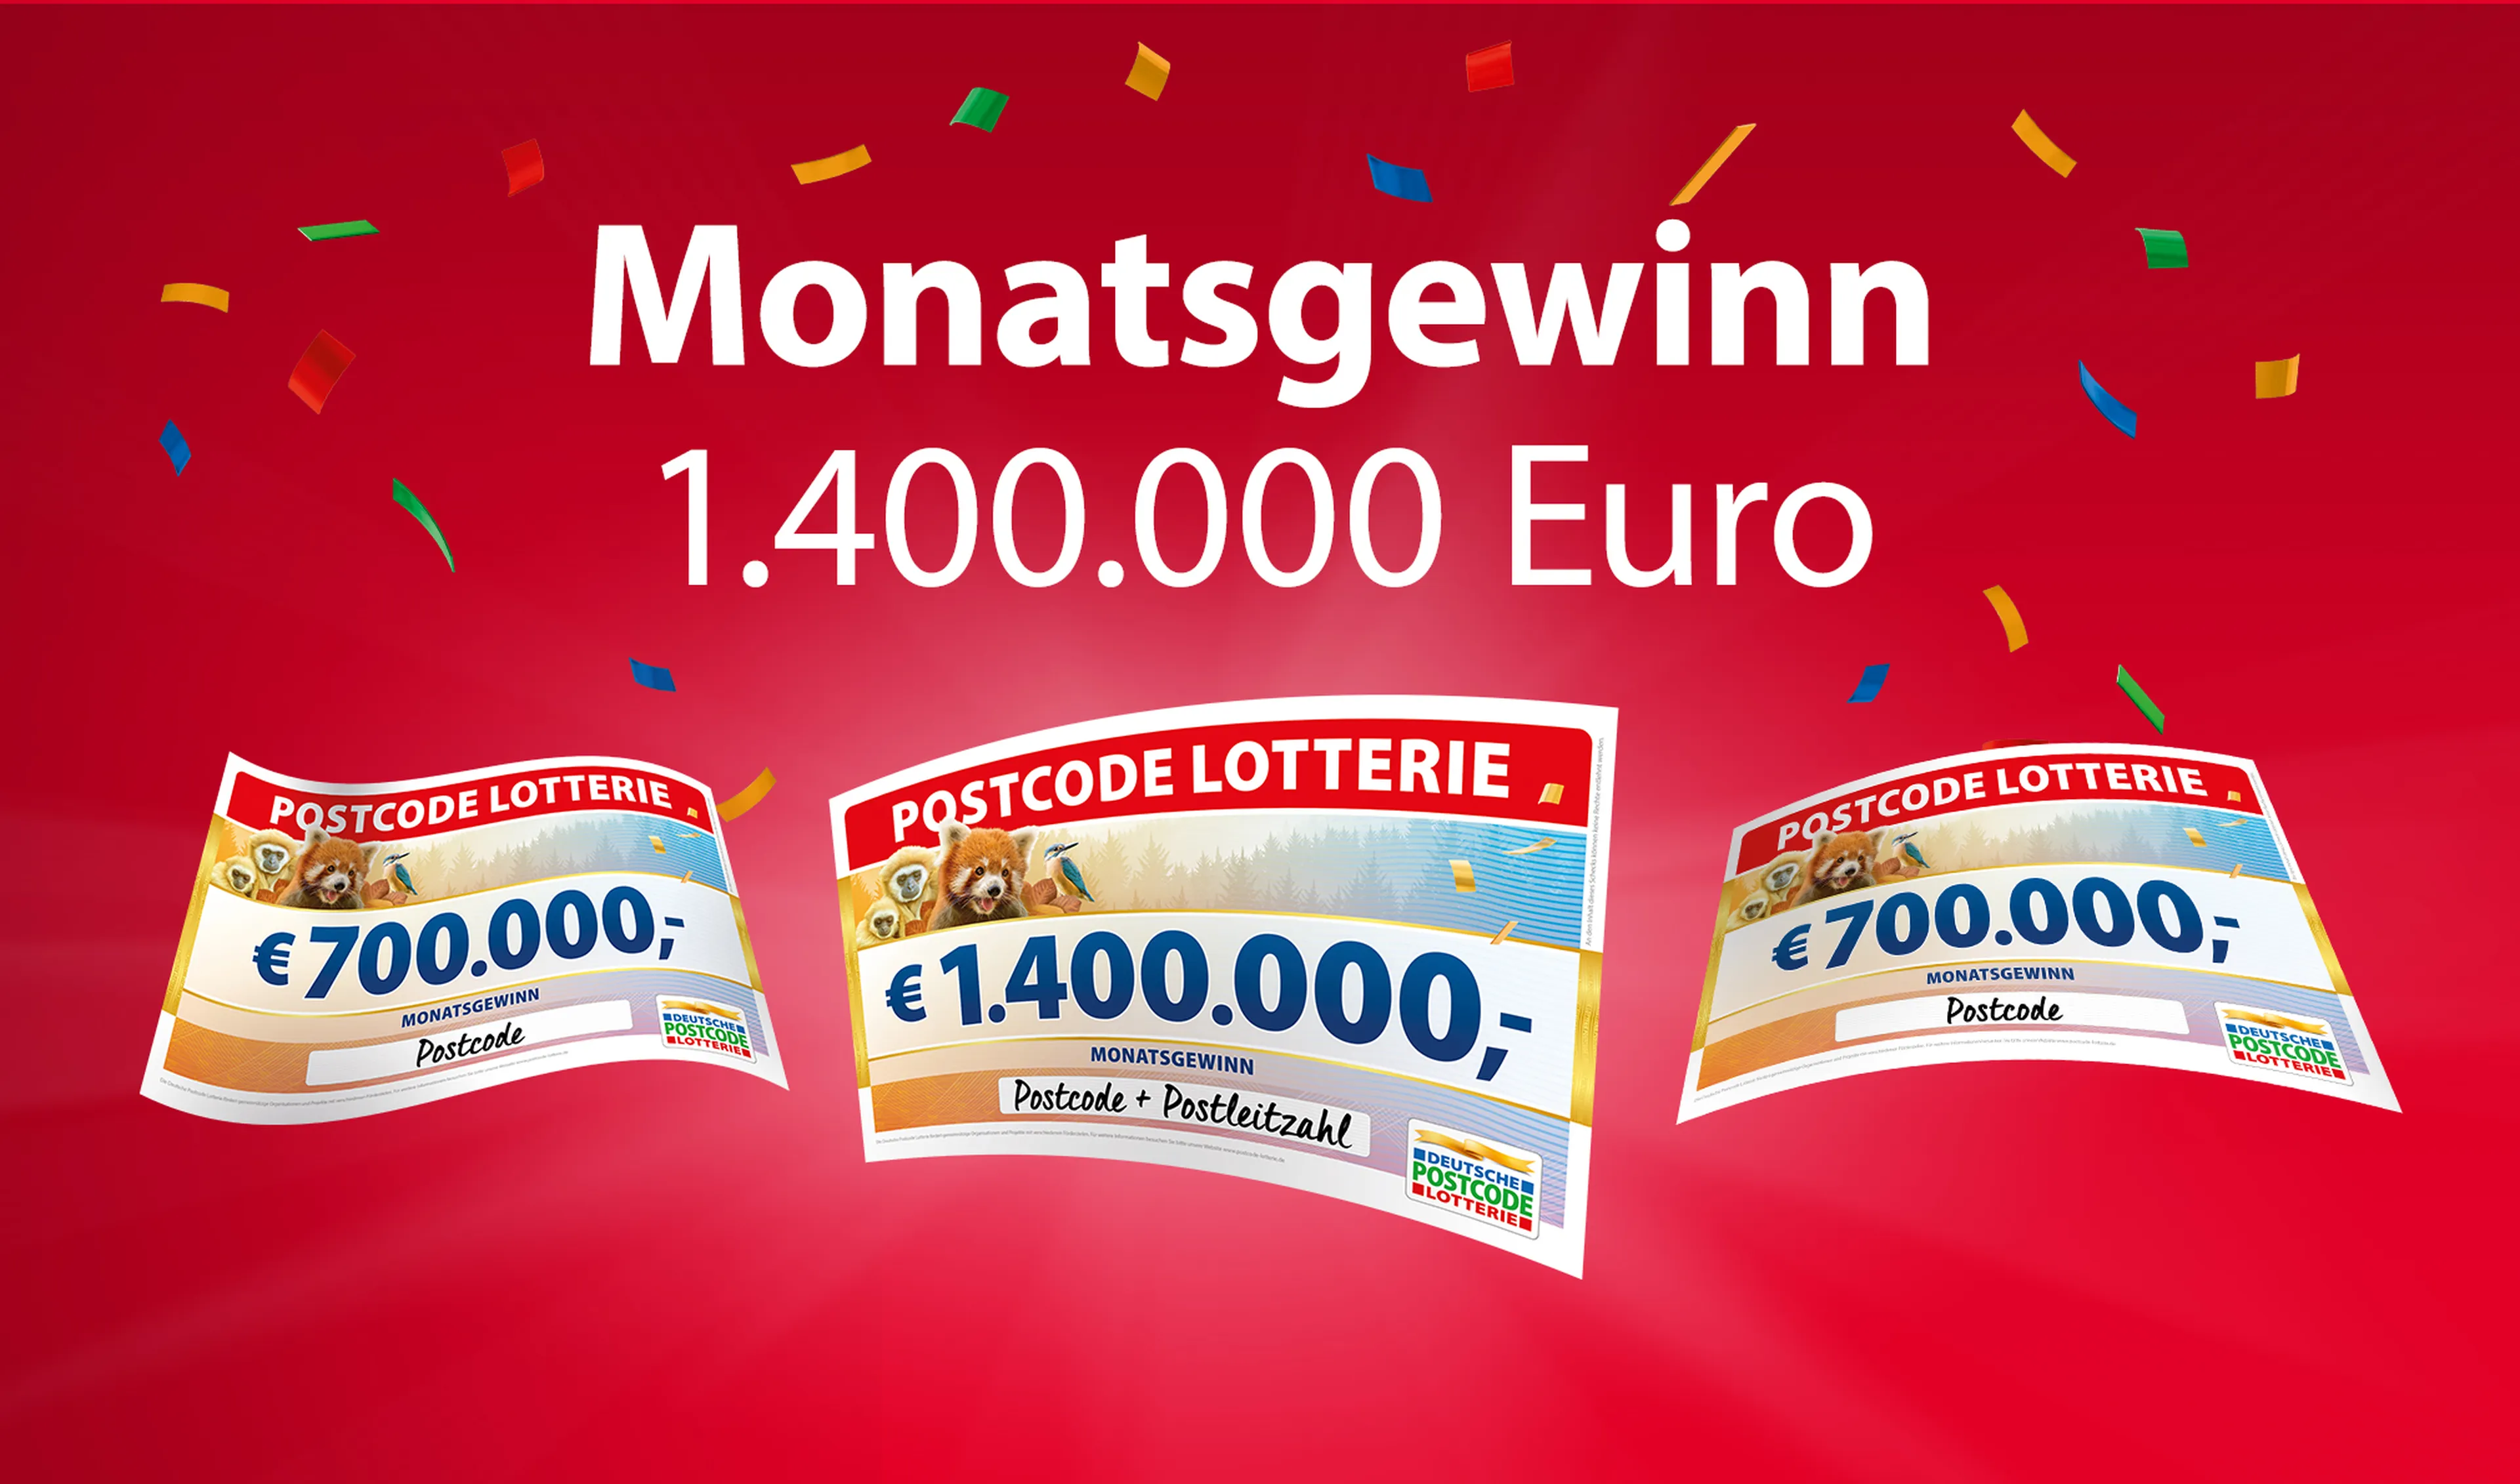 Postcode Lotterie Monatsgewinn